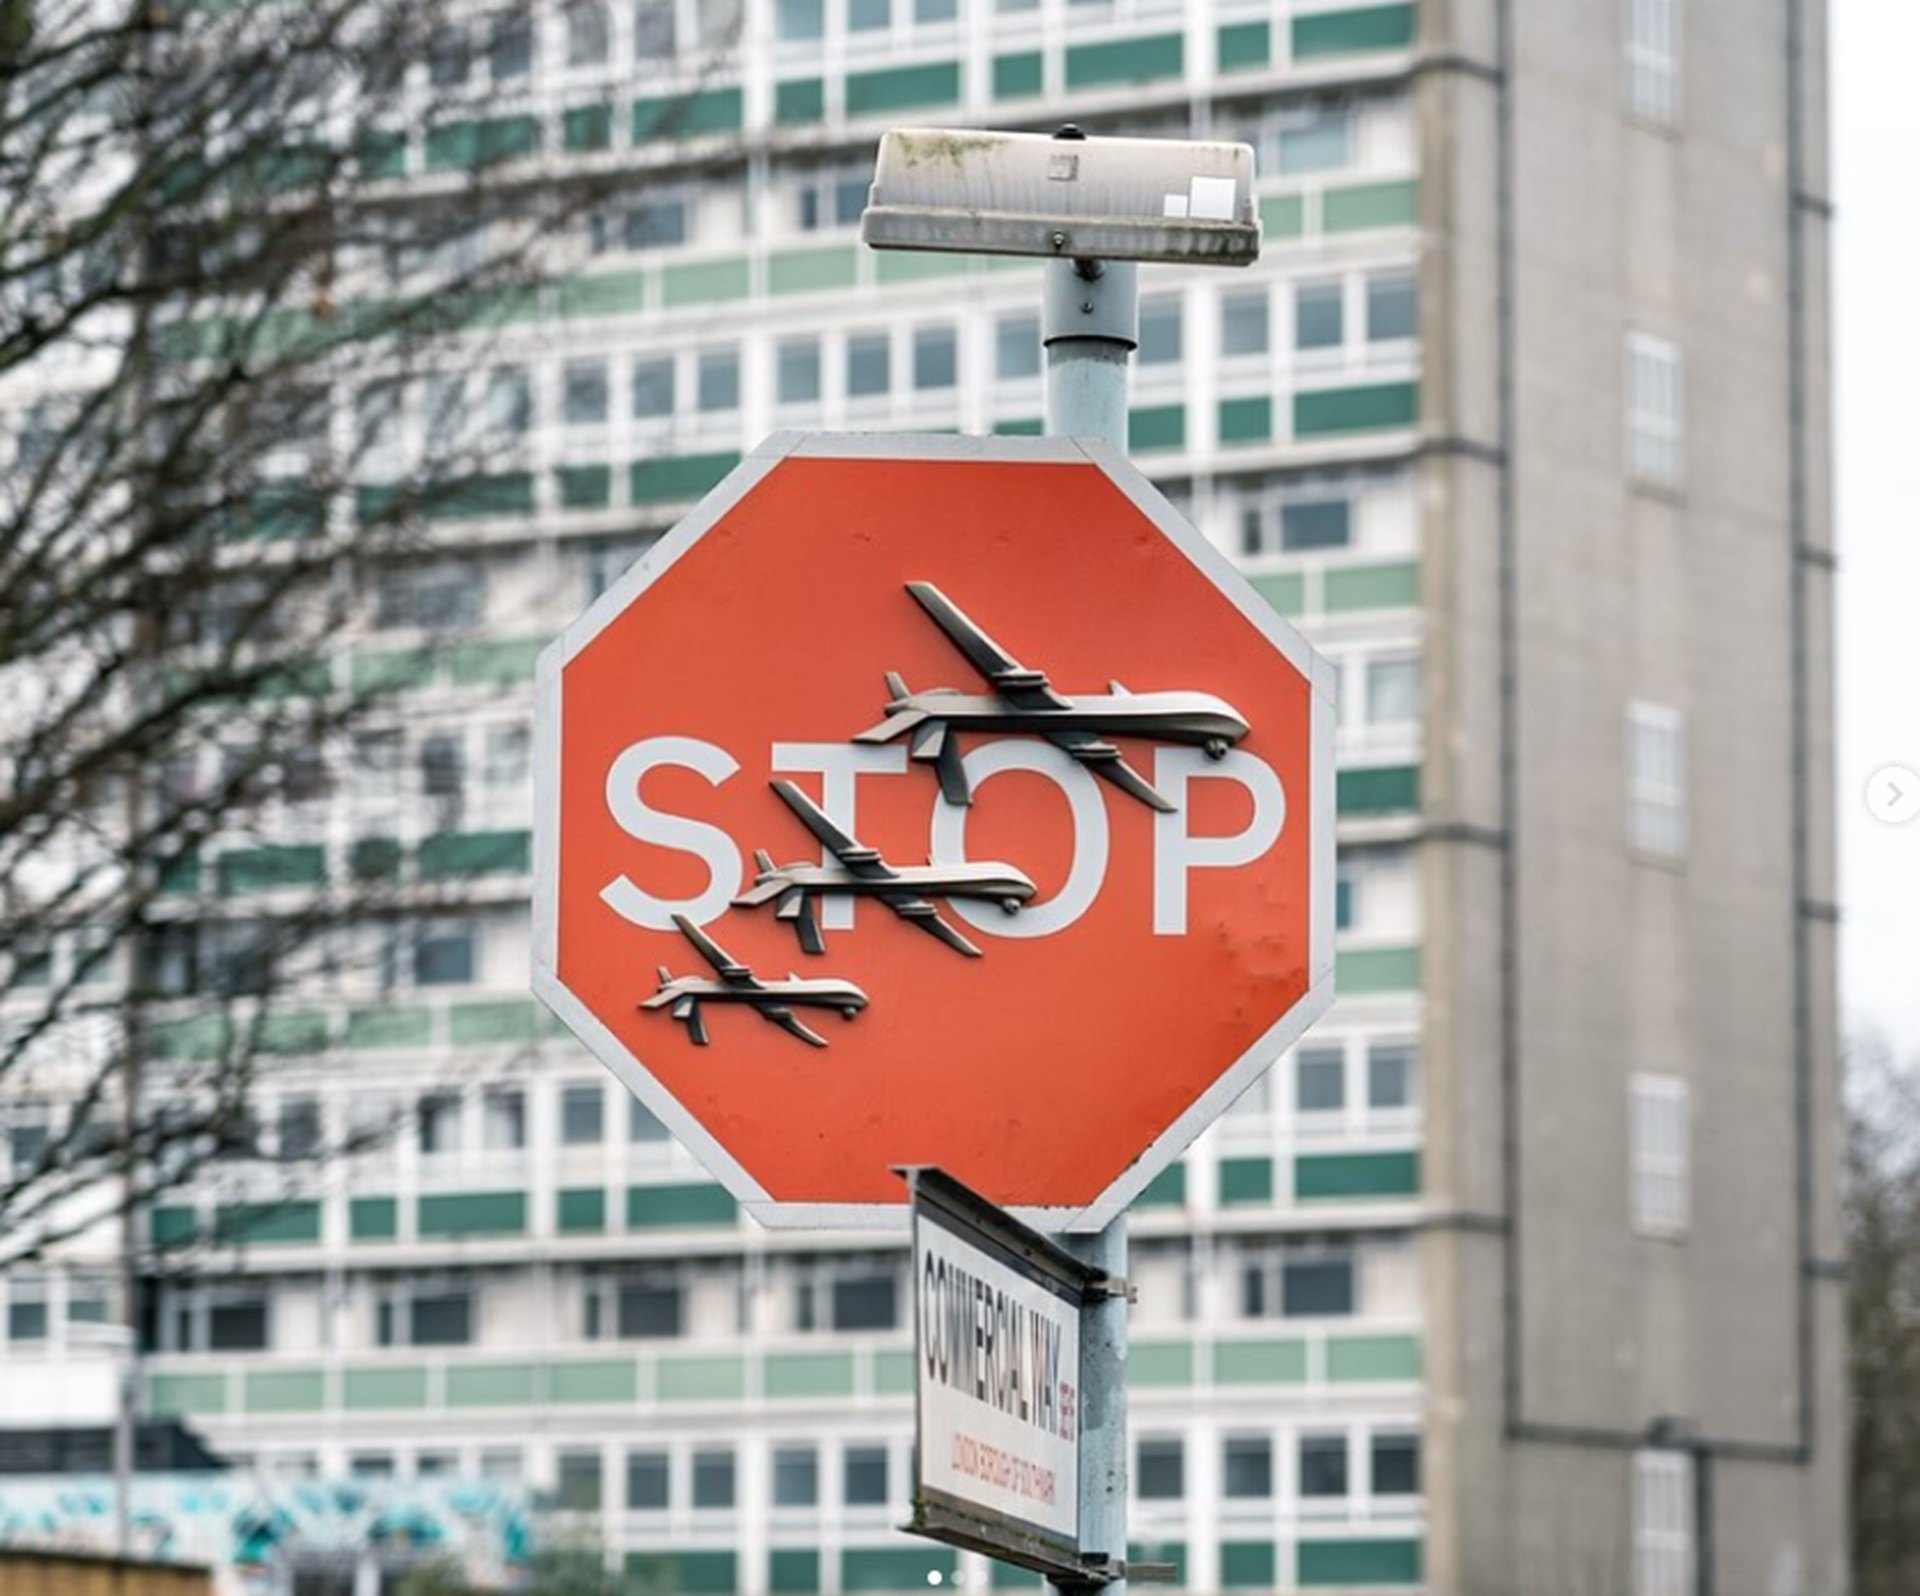 Roban la última obra de Banksy en Londres: una señal de Stop adornado con tres drones